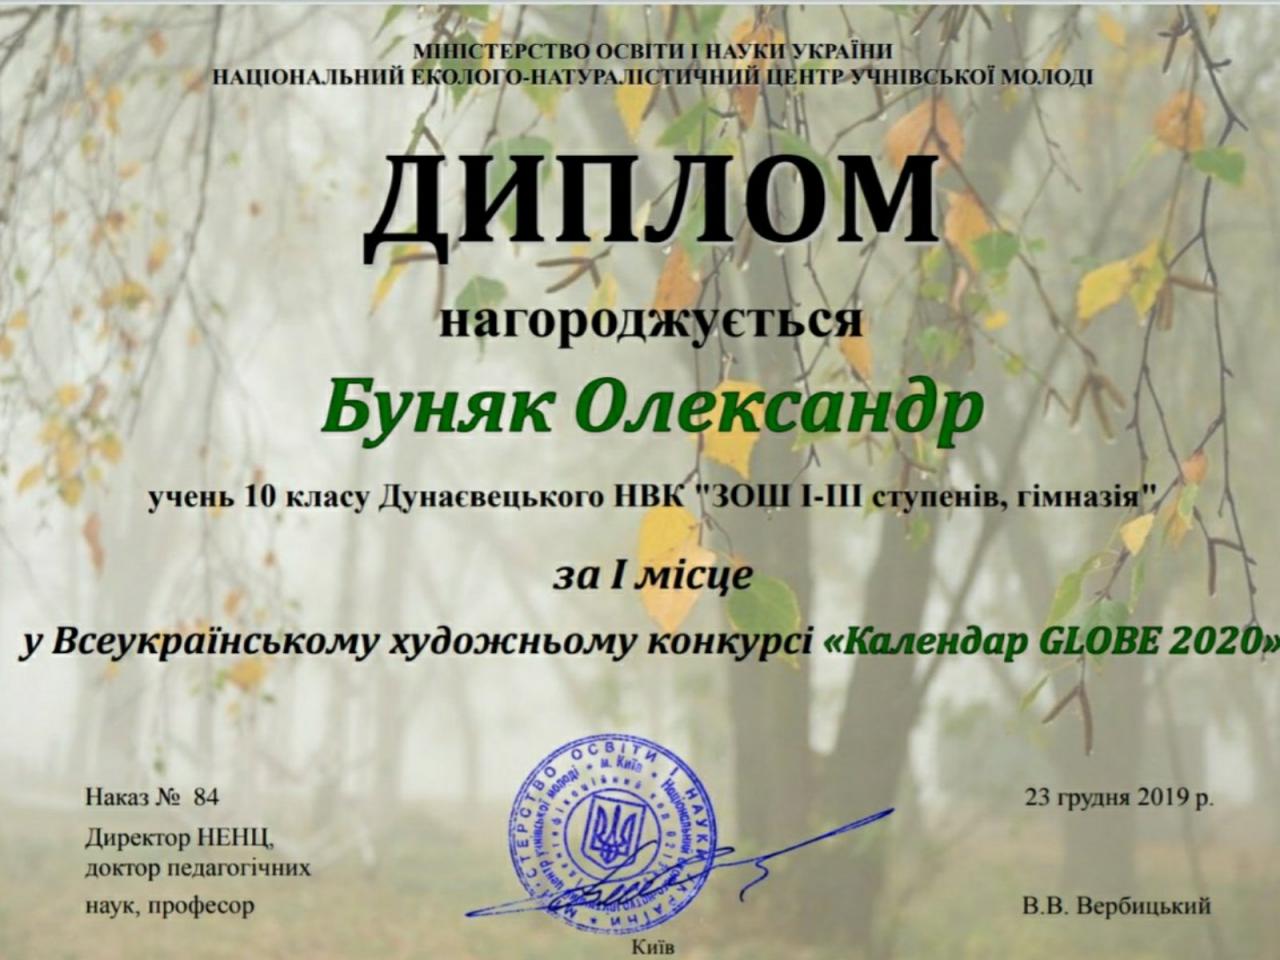 http://dunrada.gov.ua/uploadfile/archive_news/2020/01/23/2020-01-23_8381/images/images-65395.jpg